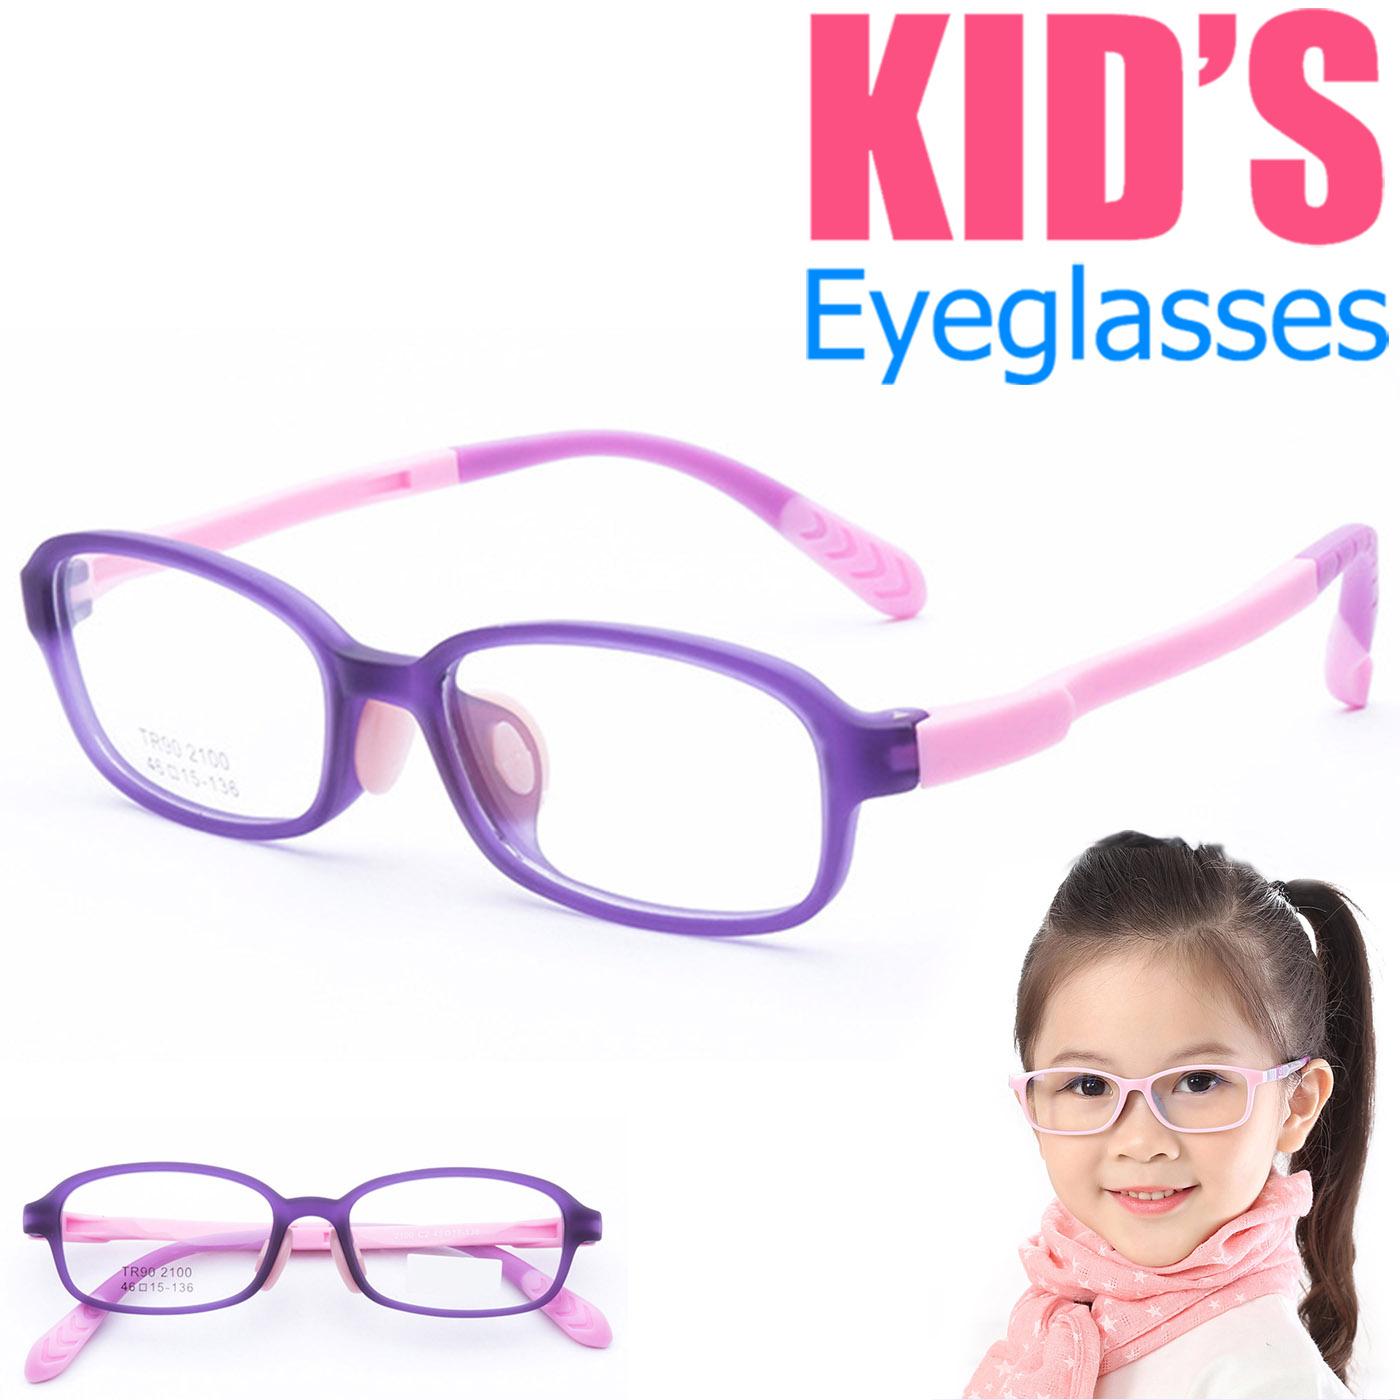 แว่นตาเกาหลีเด็ก Fashion Korea Children แว่นตาเด็ก รุ่น 2100 C-2 สีม่วง กรอบแว่นตาเด็ก Square ทรงสี่เหลี่ยม Eyeglass baby frame ( สำหรับตัดเลนส์ ) วัสดุ TR-90 เบาและยืดหยุนได้สูง ขาข้อต่อ Kid eyewear Glasses